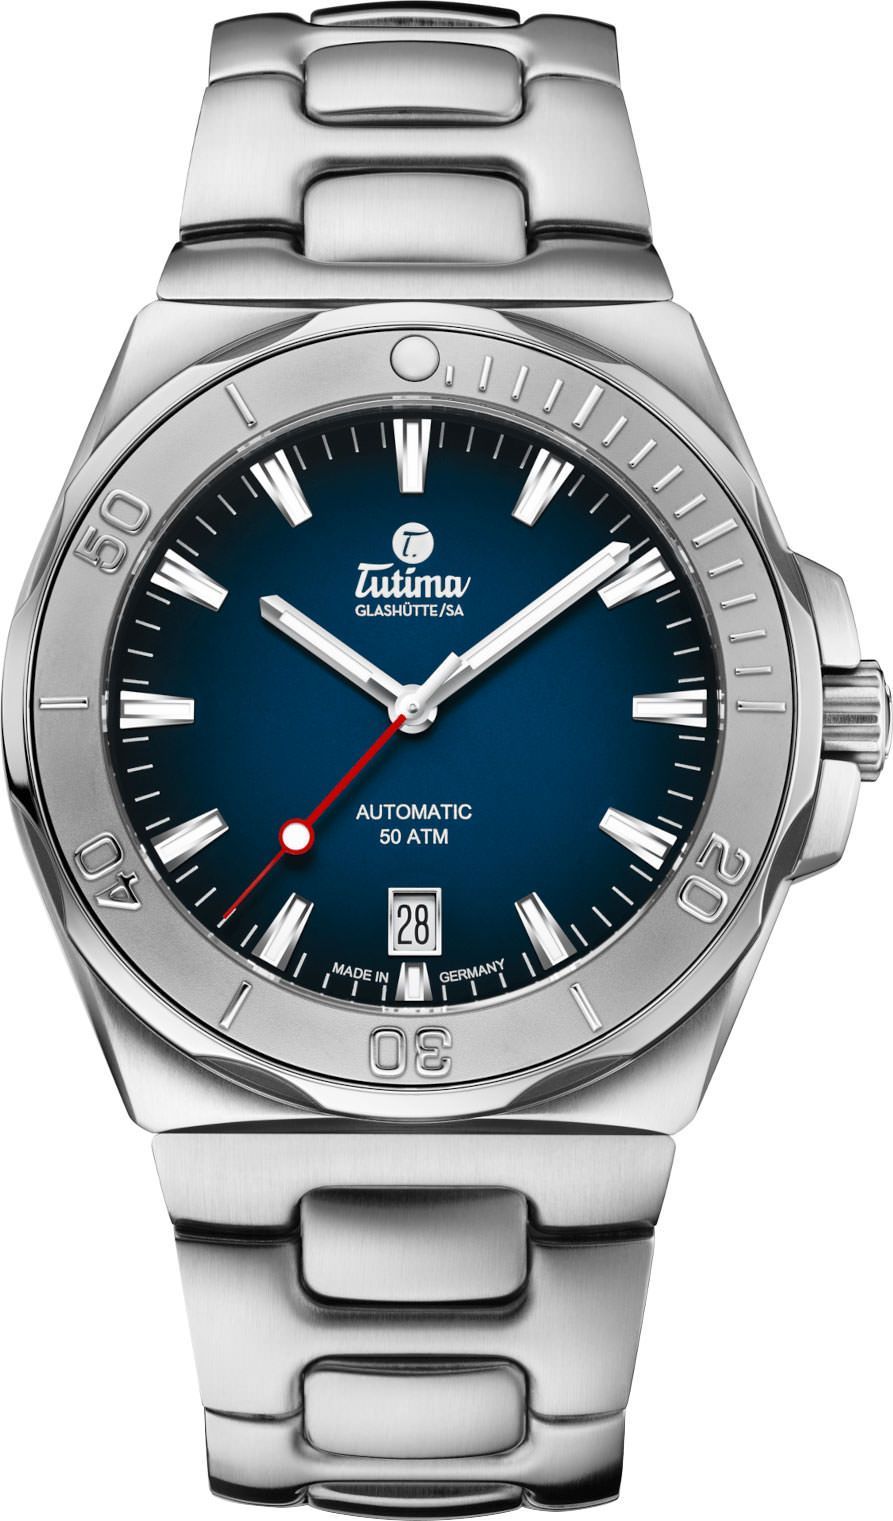 Tutima Glashütte Seven Seas S 40 mm Watch in Blue Dial For Men - 1